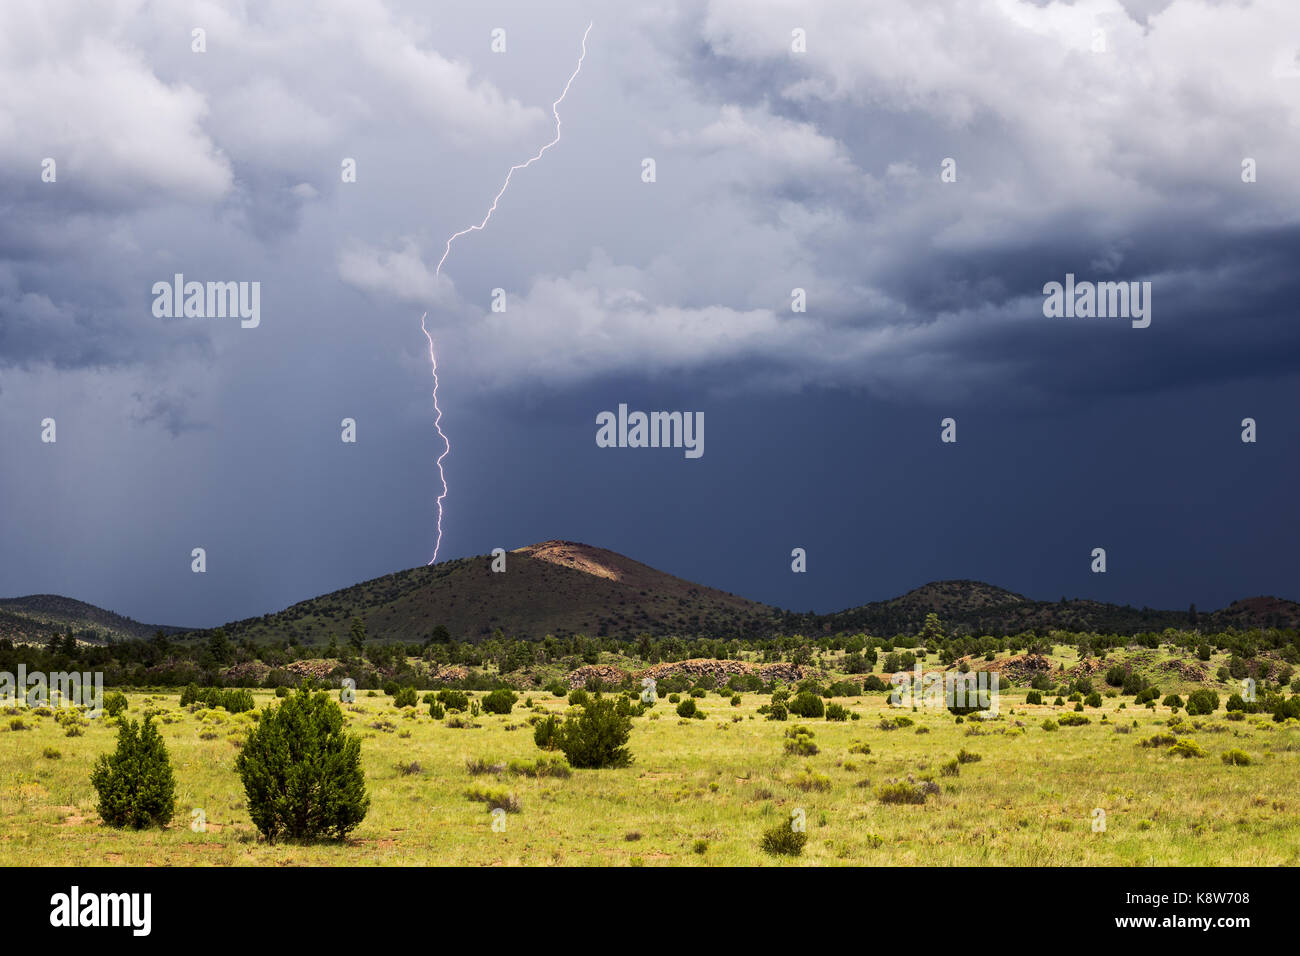 La foudre entre nuages et sol frappe lors d'une tempête estivale au-dessus du champ volcanique de San Francisco Peaks, près de Flagstaff, en Arizona Banque D'Images